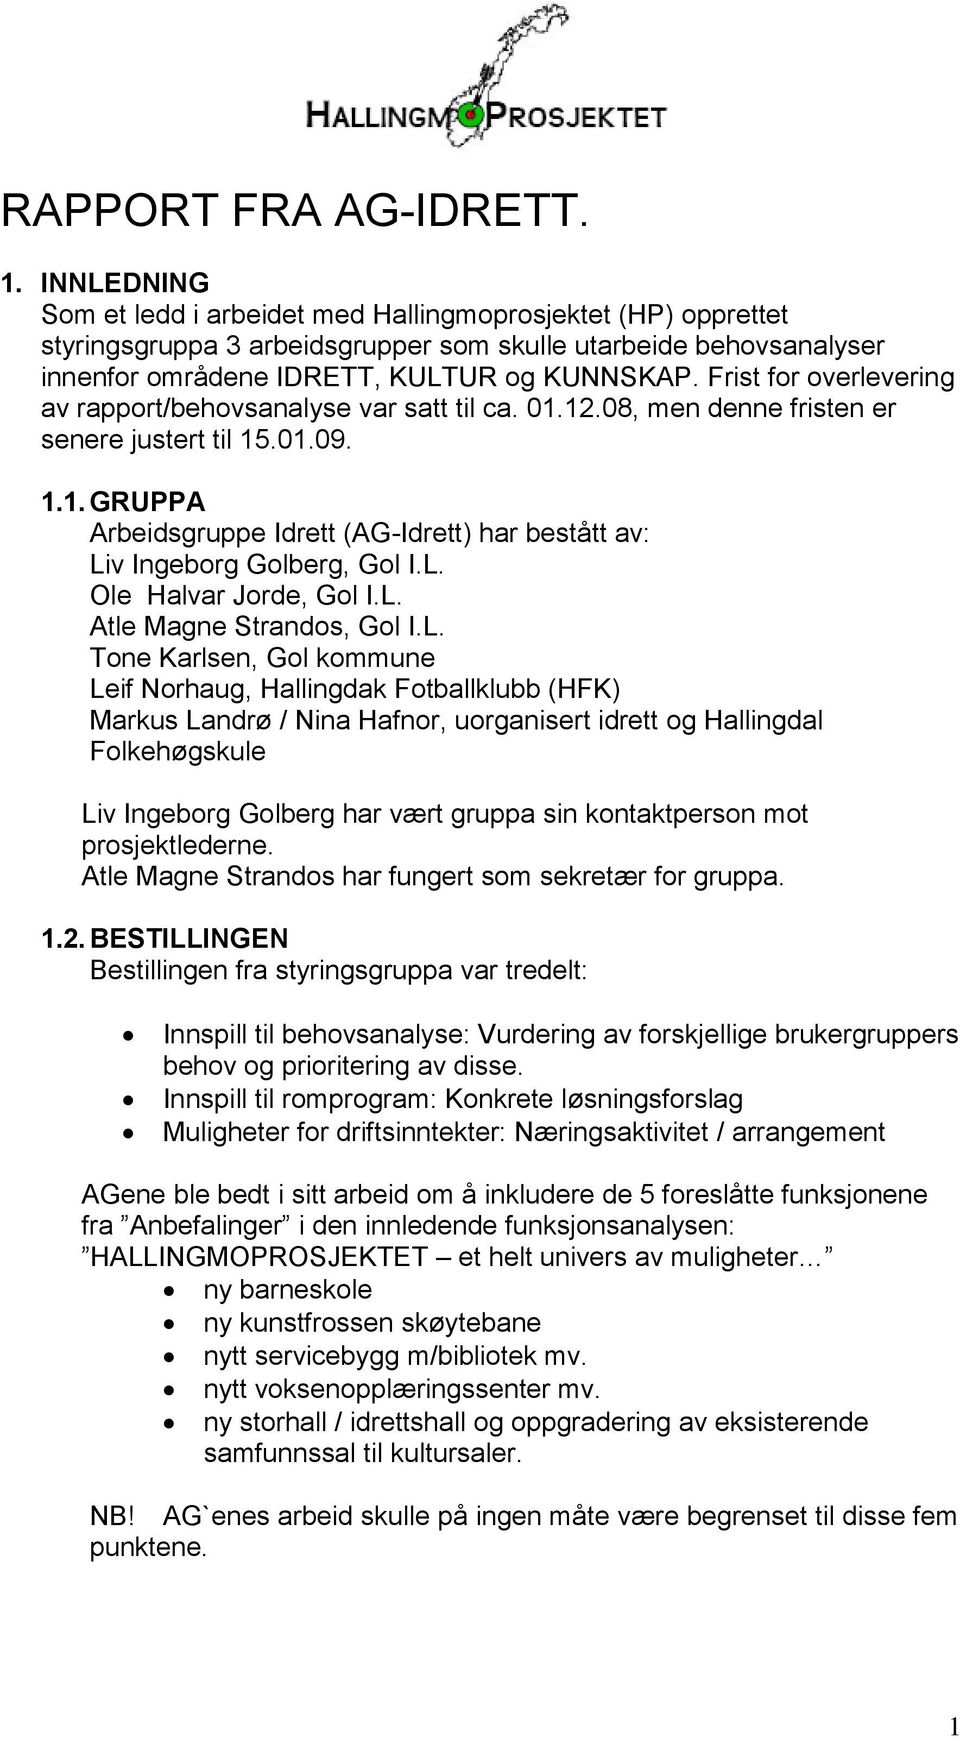 Frist for overlevering av rapport/behovsanalyse var satt til ca. 01.12.08, men denne fristen er senere justert til 15.01.09. 1.1. GRUPPA Arbeidsgruppe Idrett (AG-Idrett) har bestått av: Liv Ingeborg Golberg, Gol I.